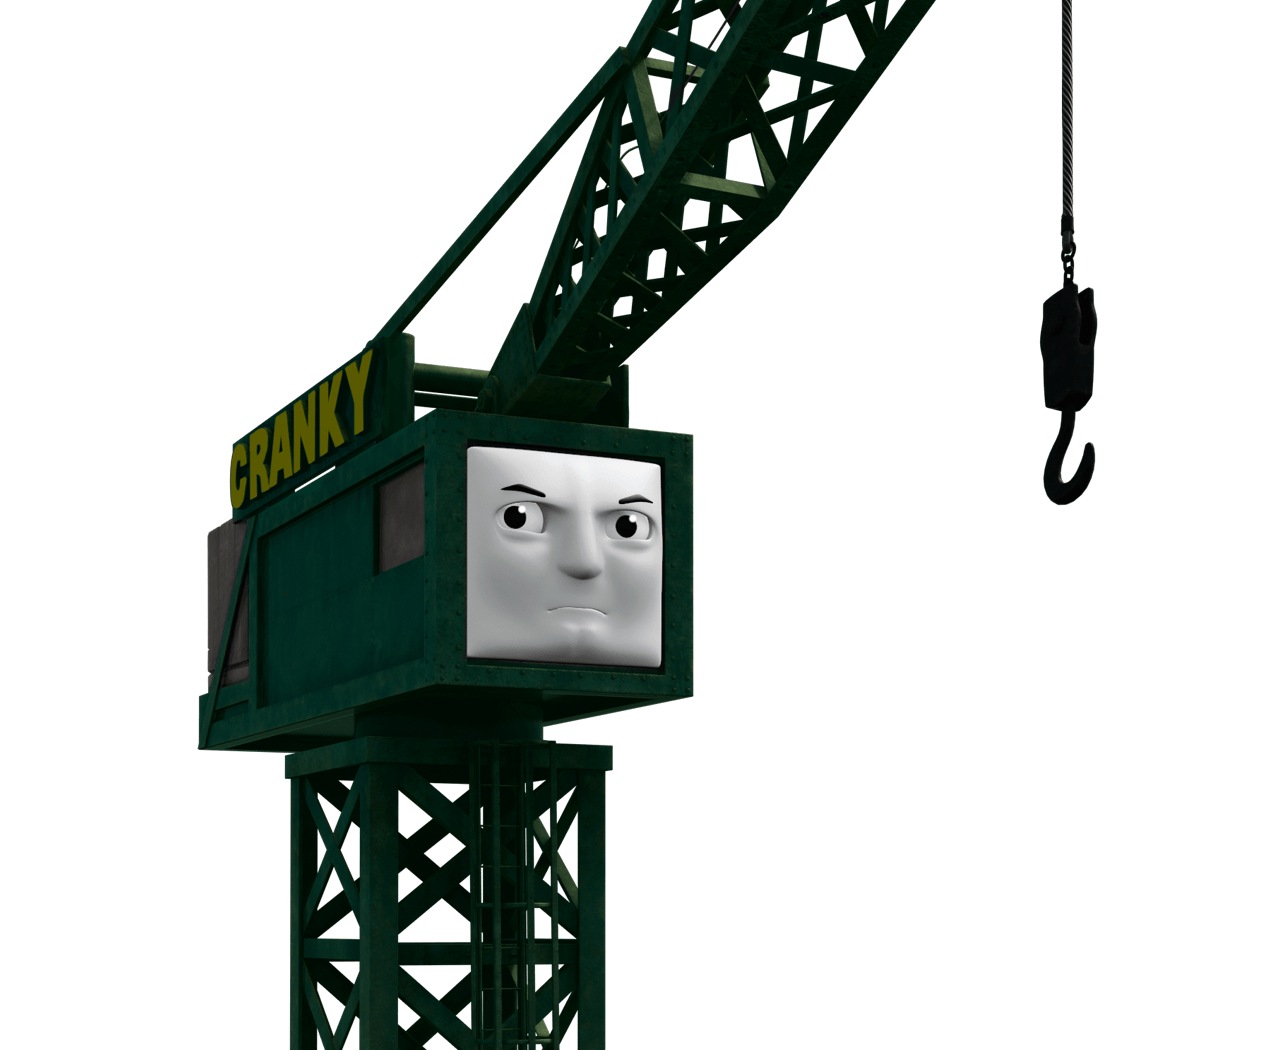 Crane cranky